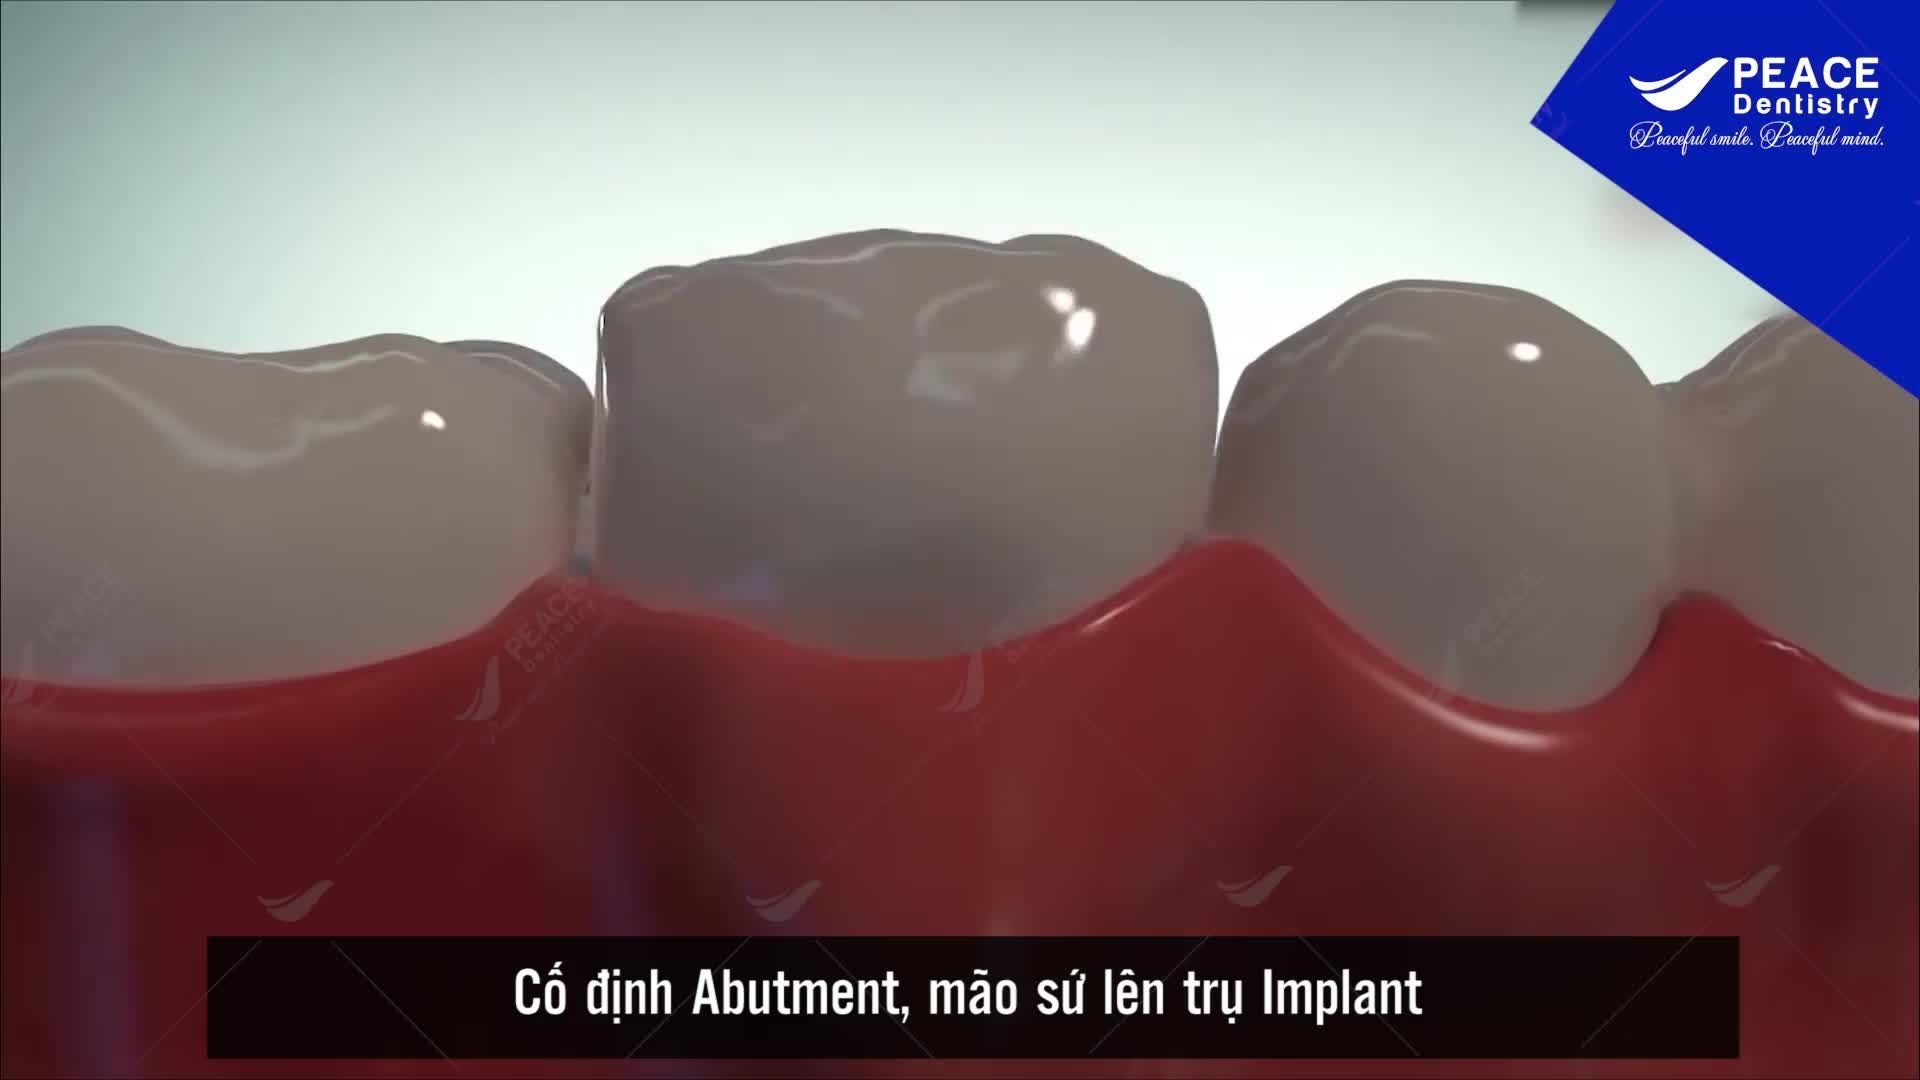 Trồng răng implant với bác sĩ chuyên gia tại Peace Dentistry